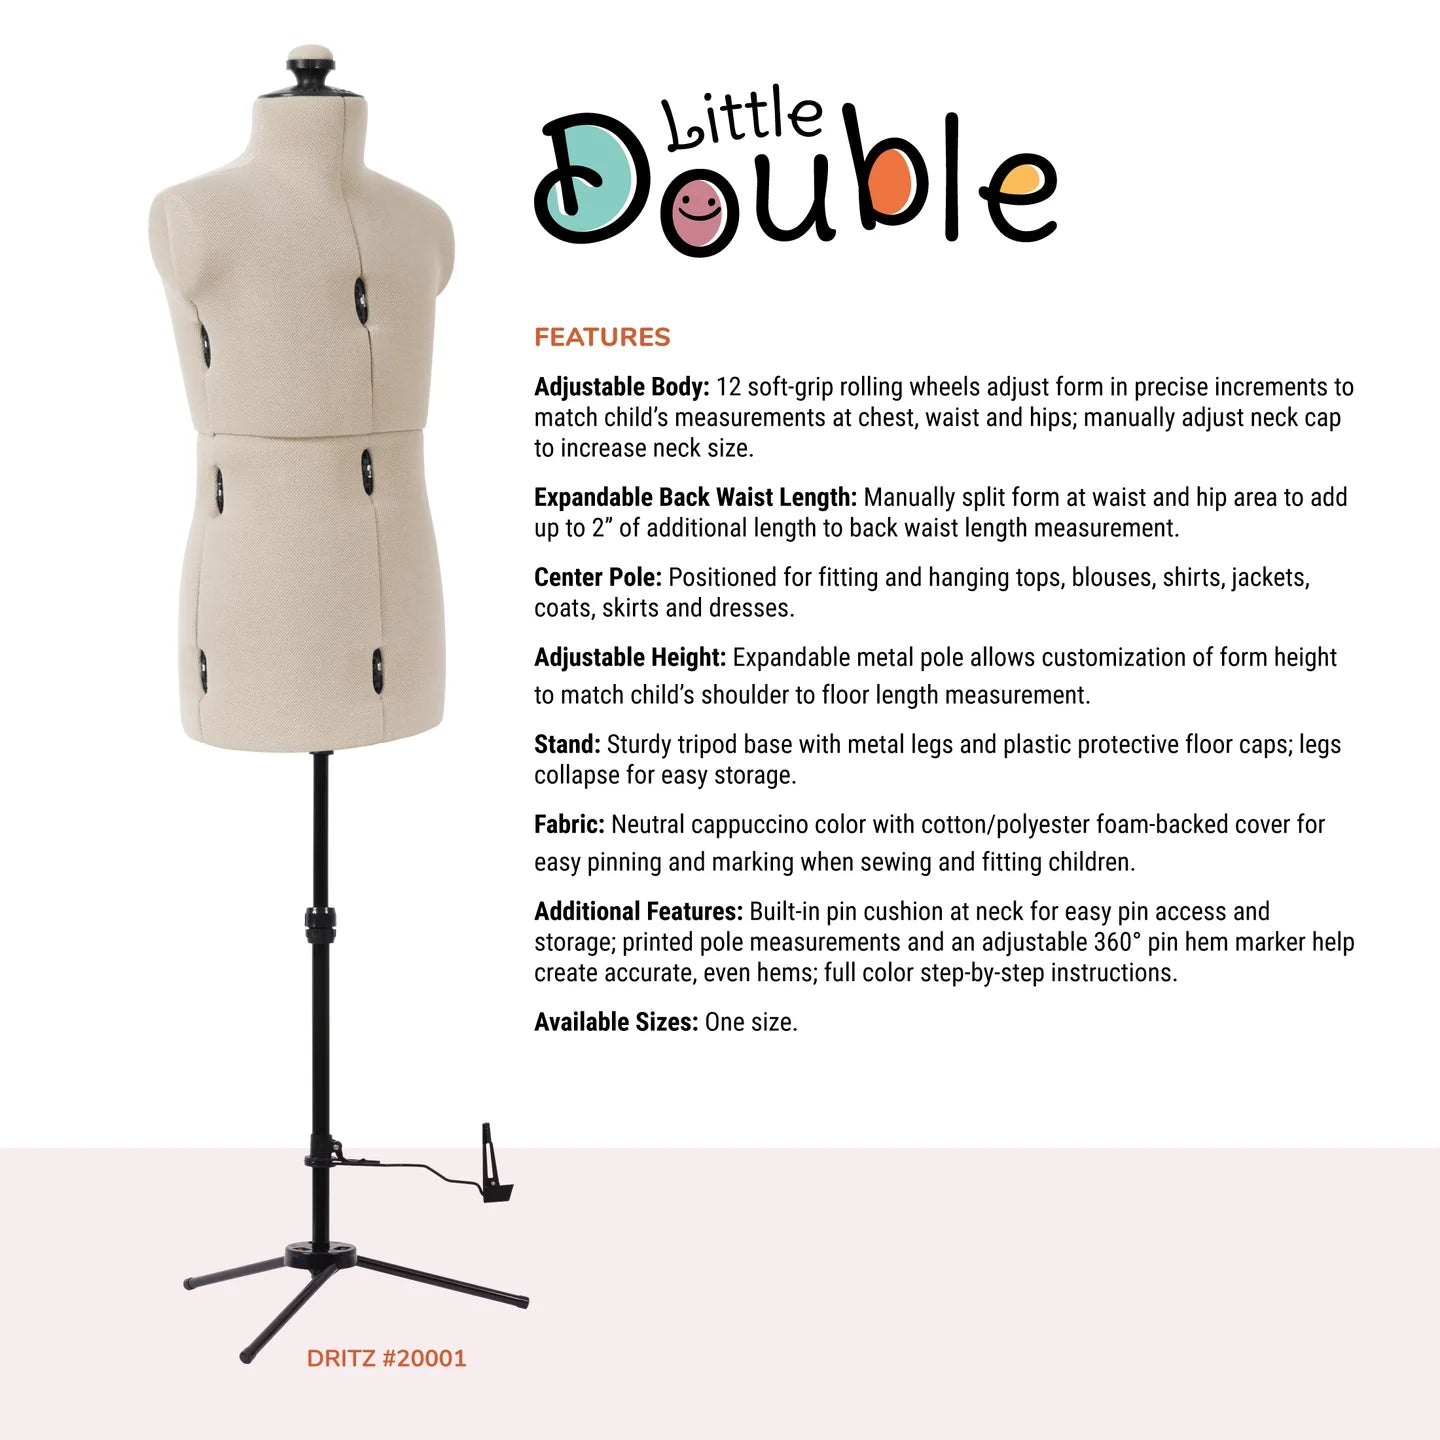 Dritz "Little Double" Adjustable Child Dress Form